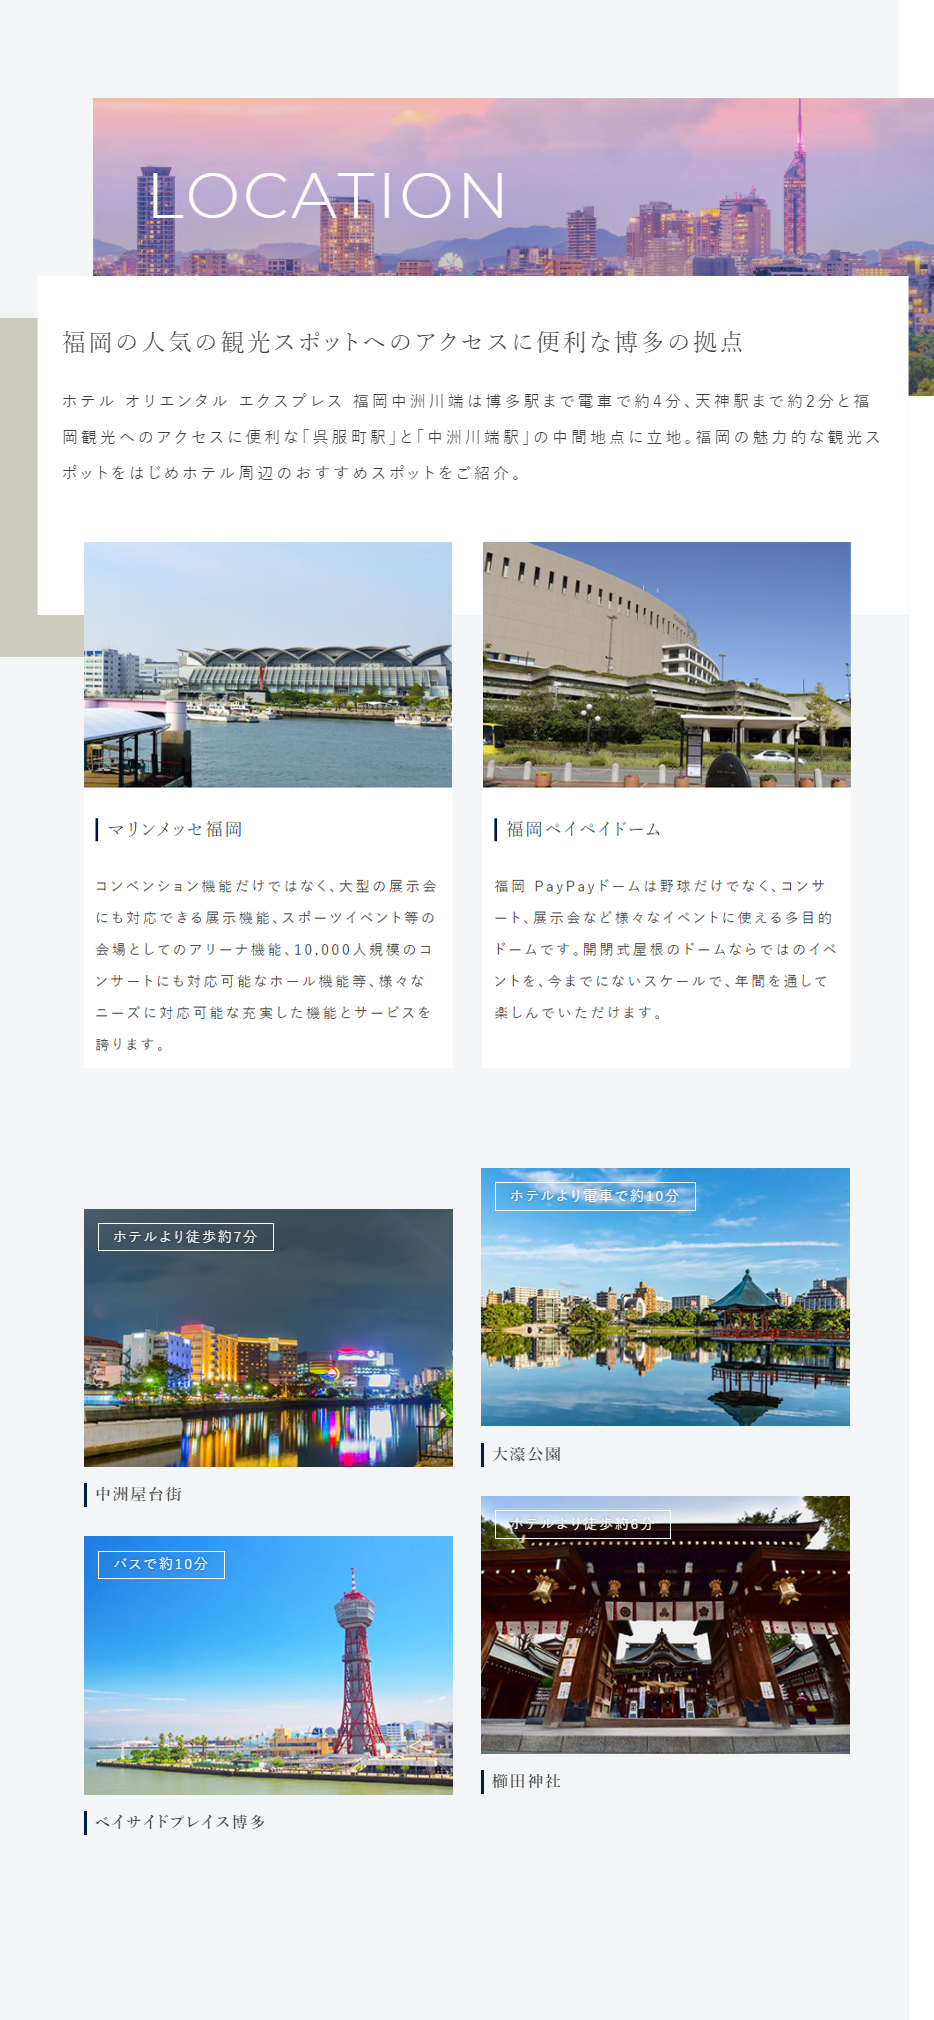 福岡の人気の観光スポットへのアクセスに便利な博多の拠点